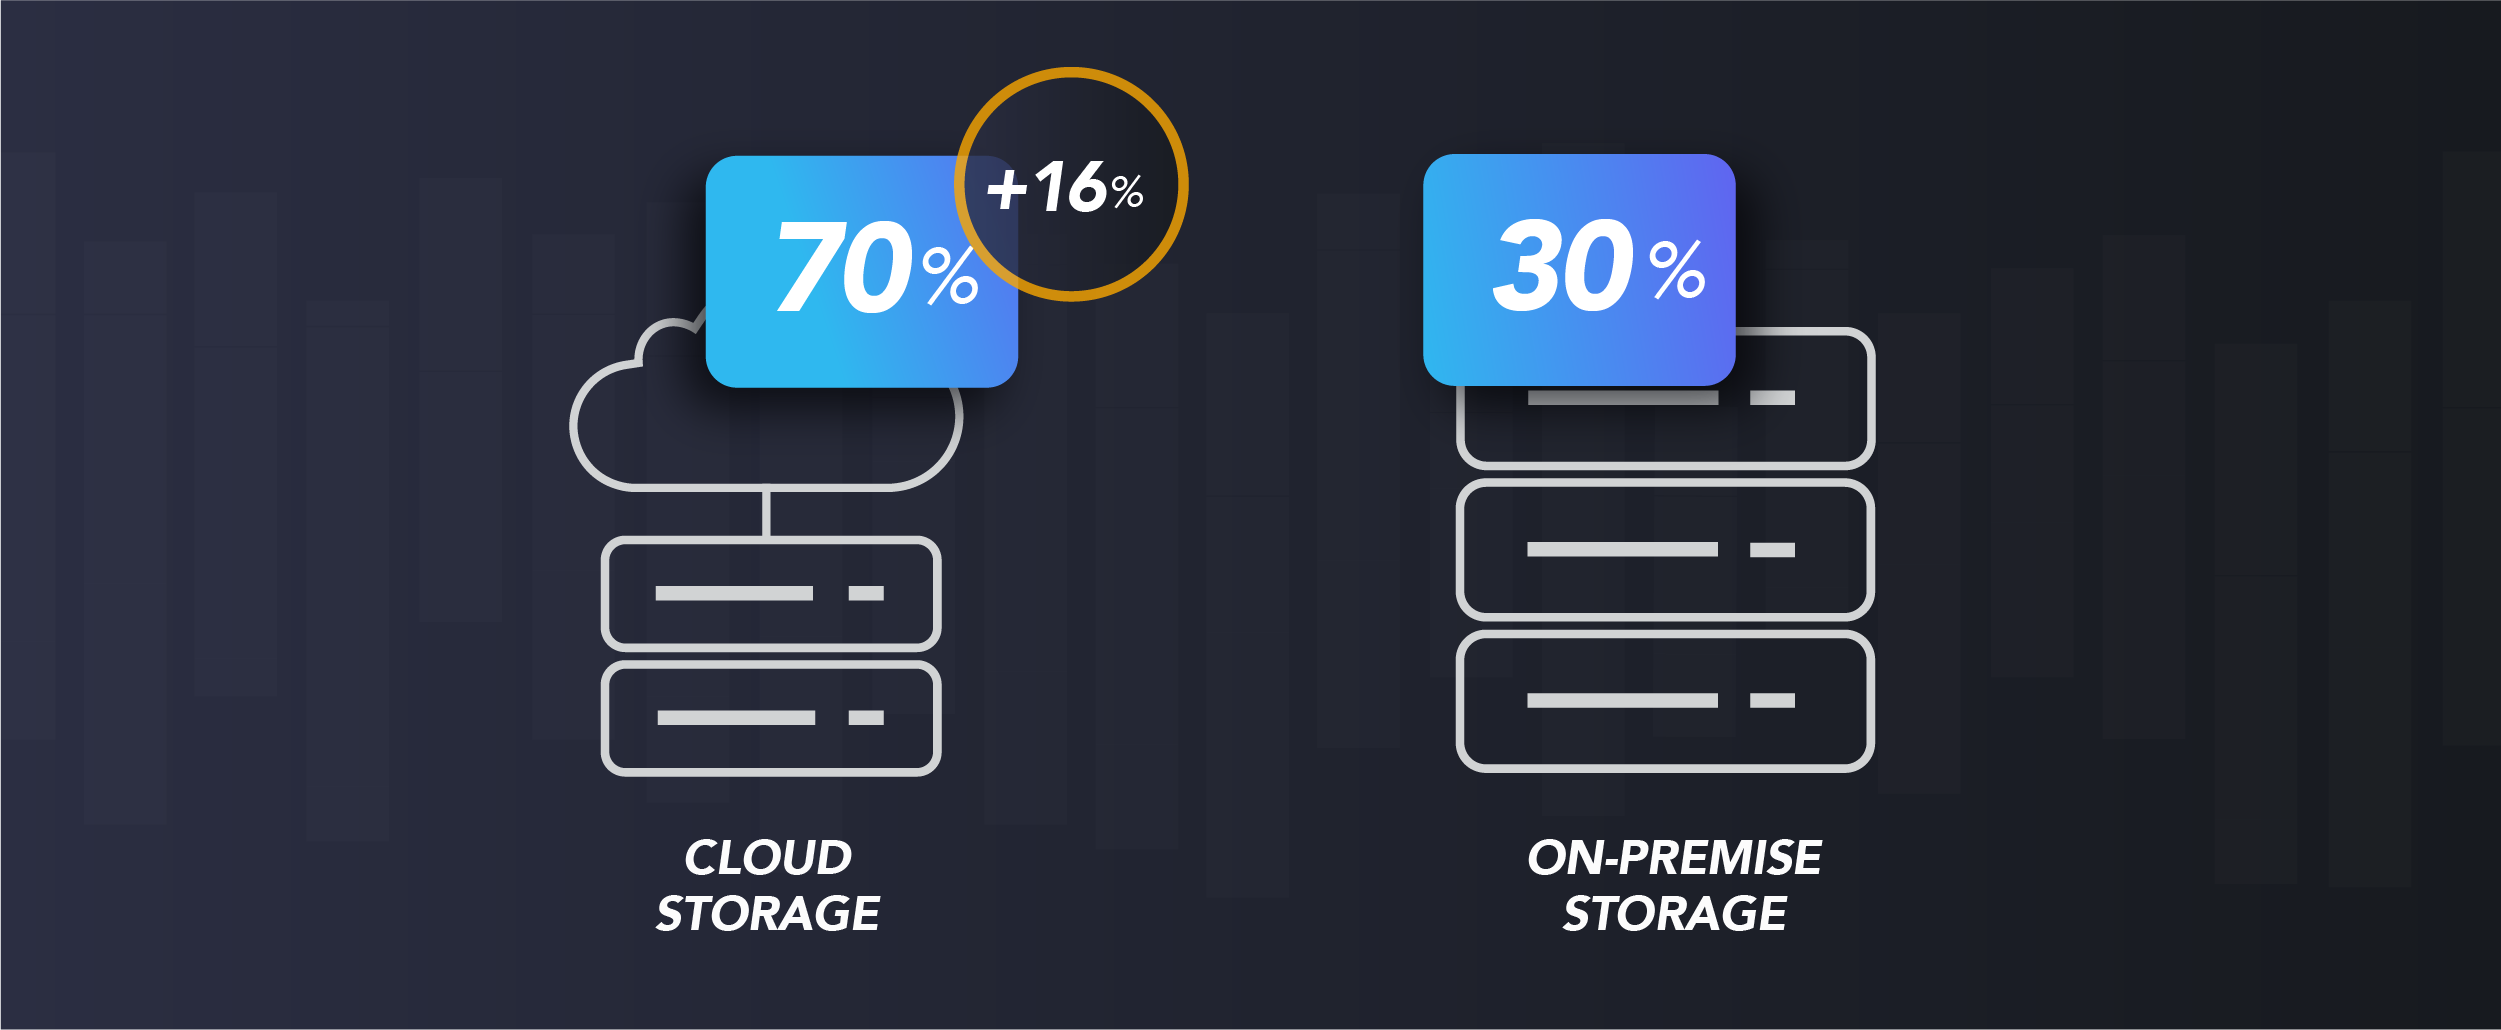 increase of cloud storage in iconik